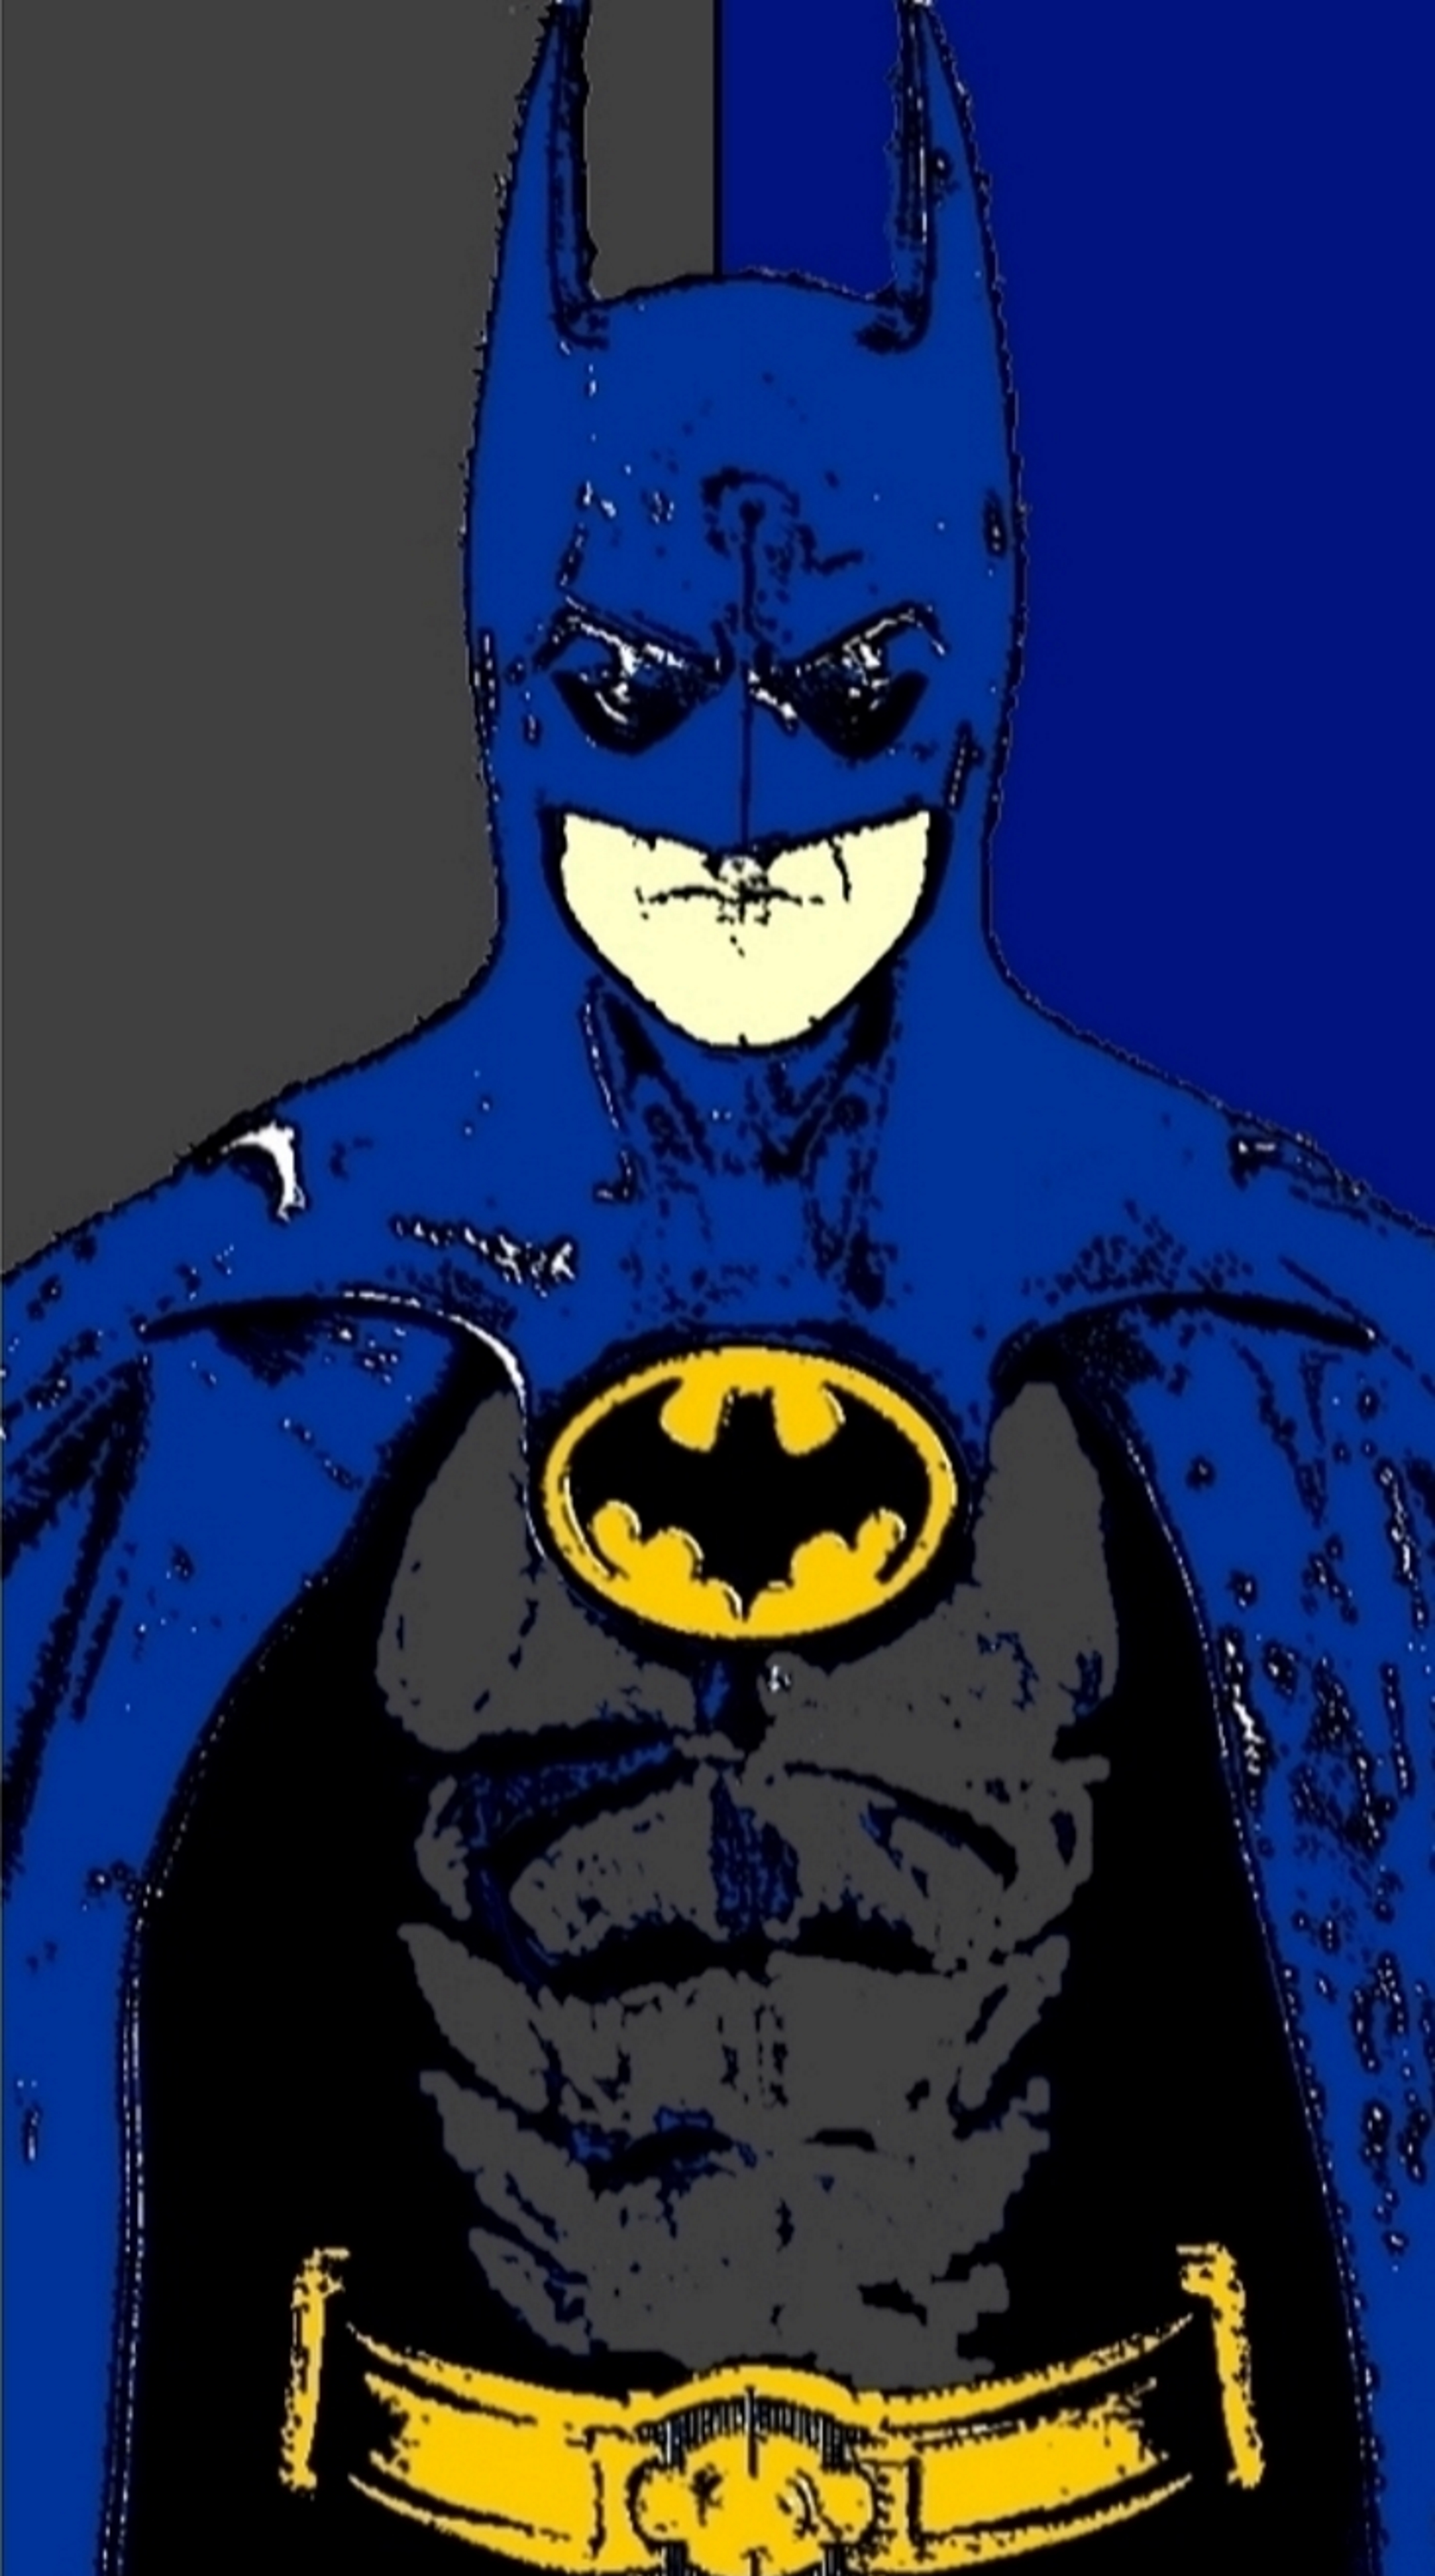 Batman pop art 2 by TheGreatDevin on DeviantArt